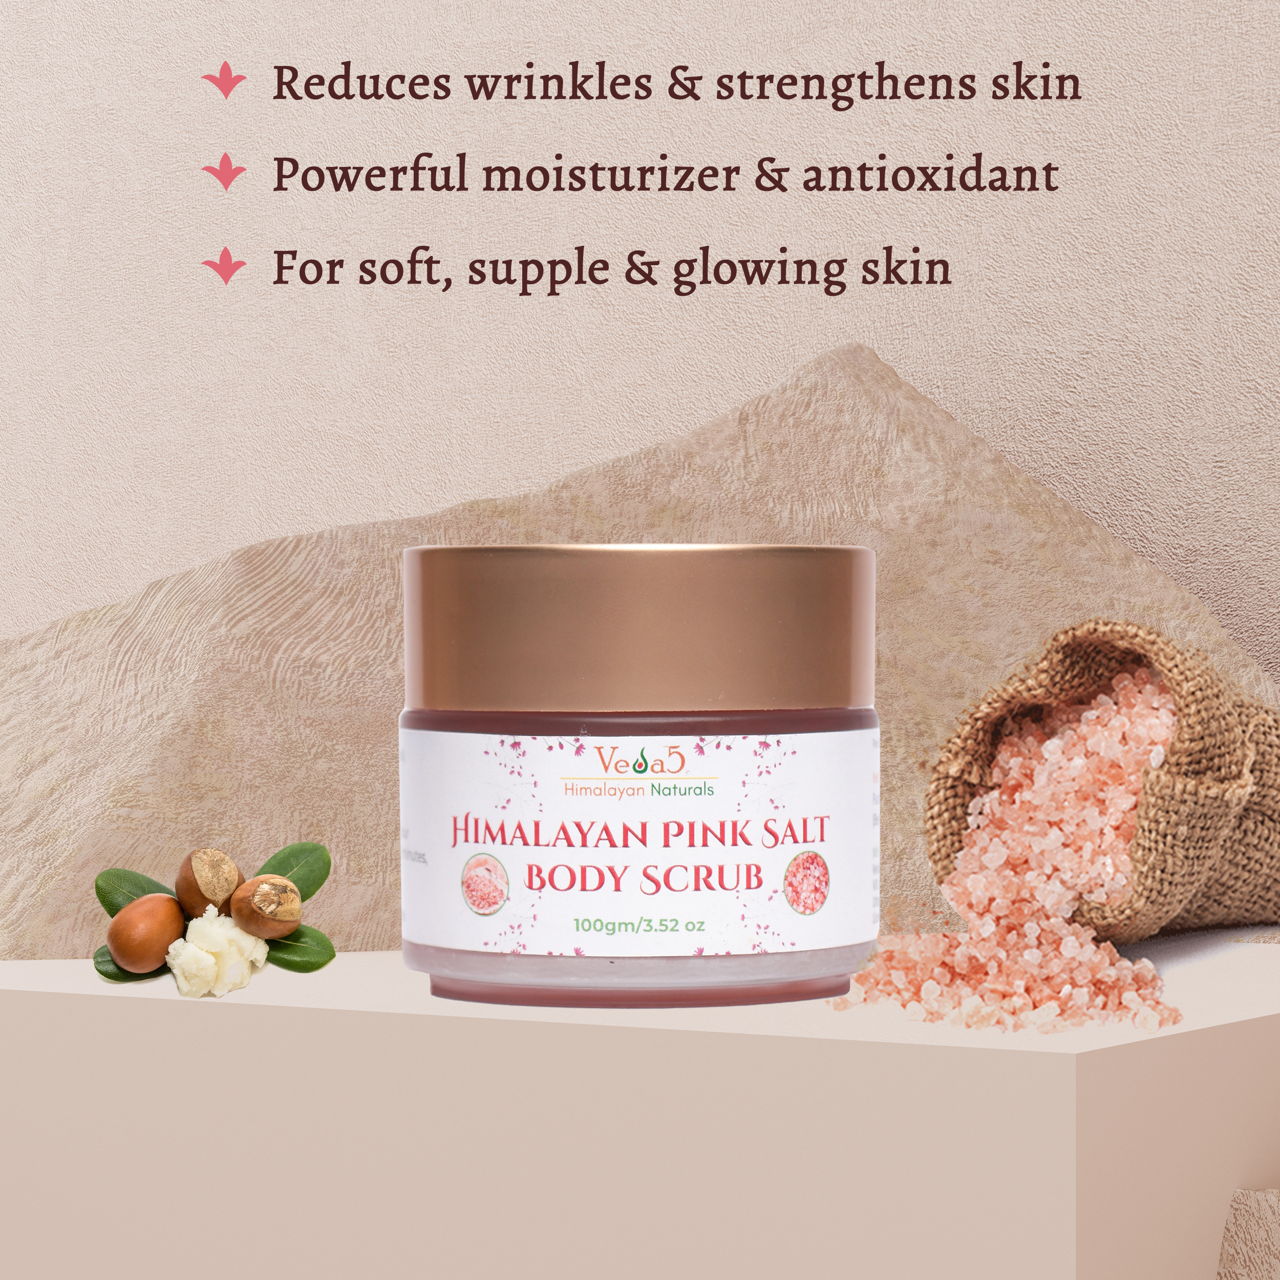 Himalayan Pink Salt Body Scrub Benefits 2 Veda5 Himalayan Naturals